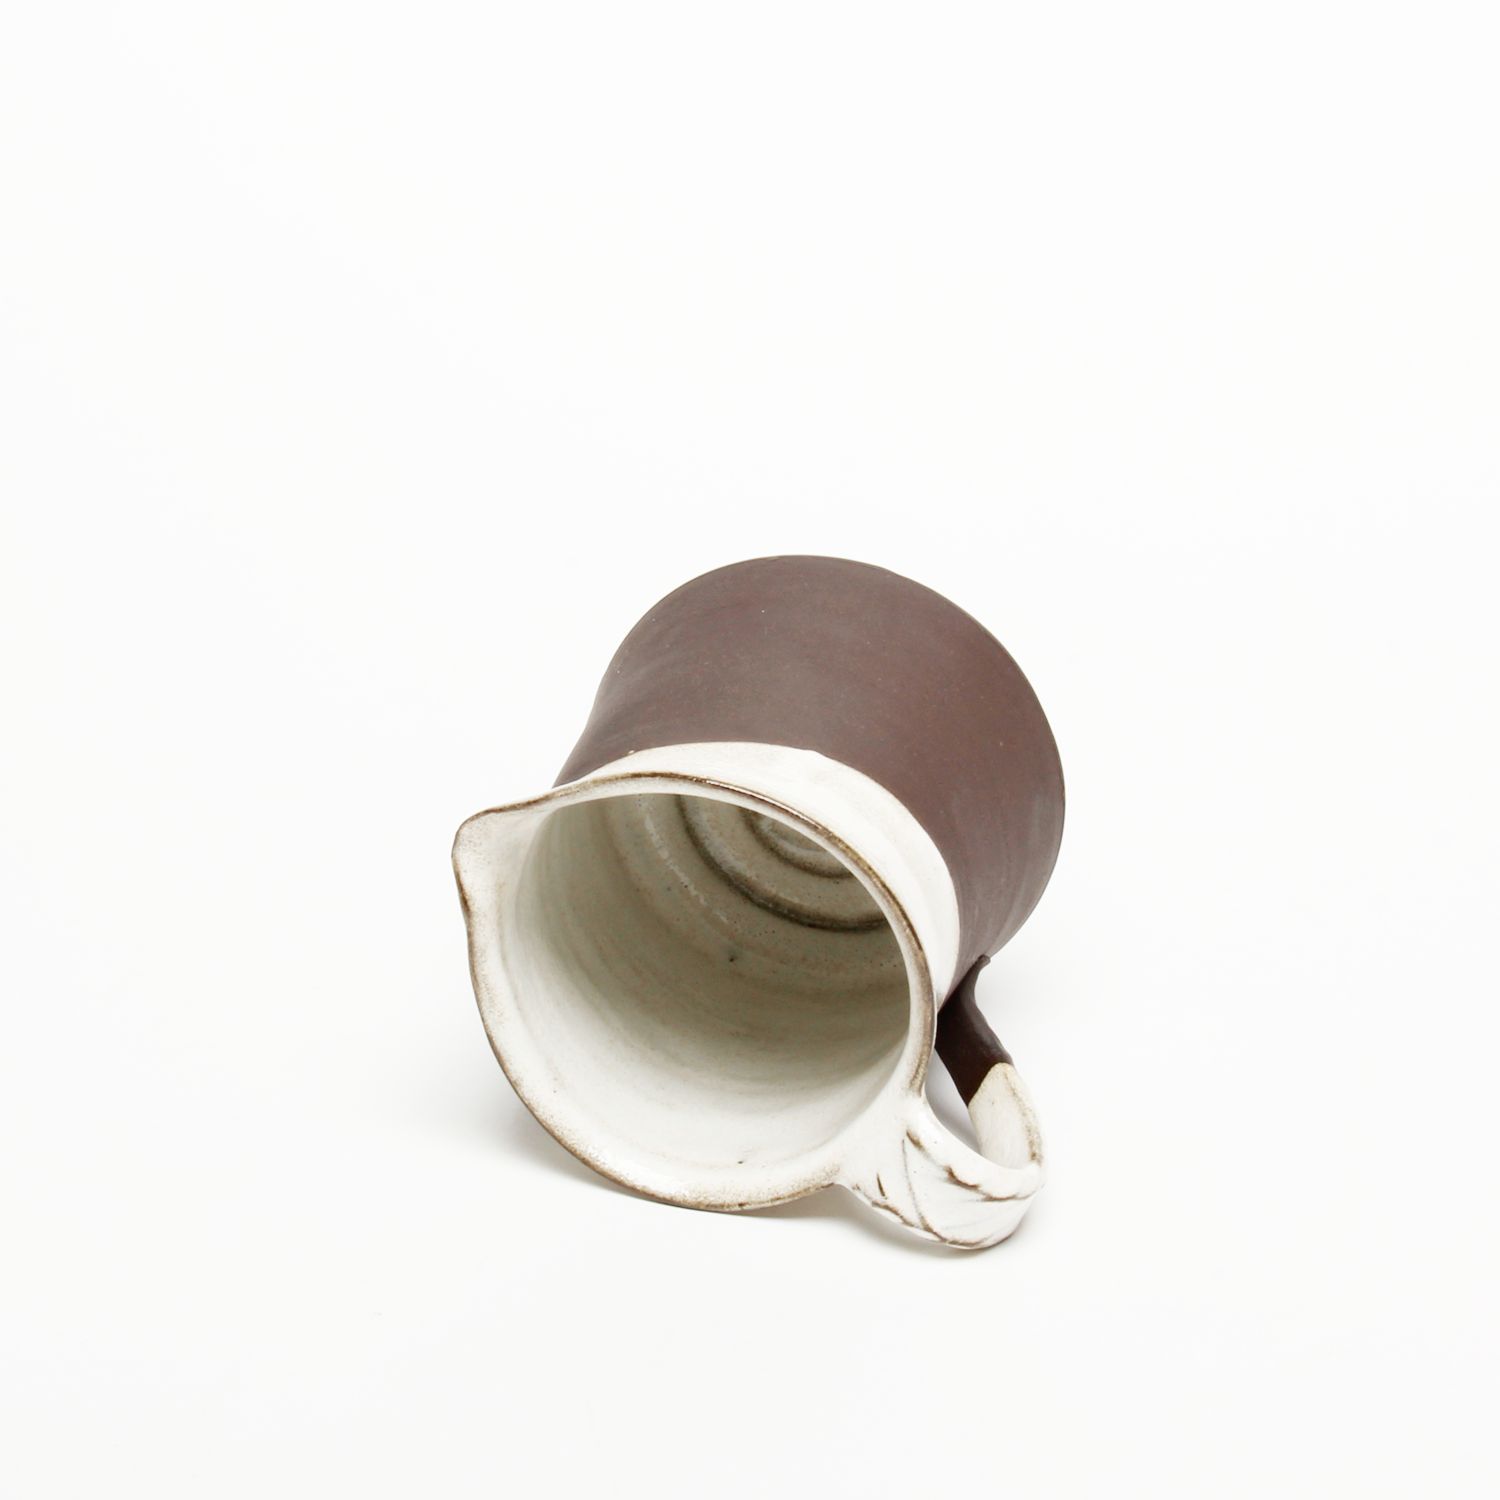 Catharina Goldnau: Black Stoneware Creamer Product Image 2 of 4